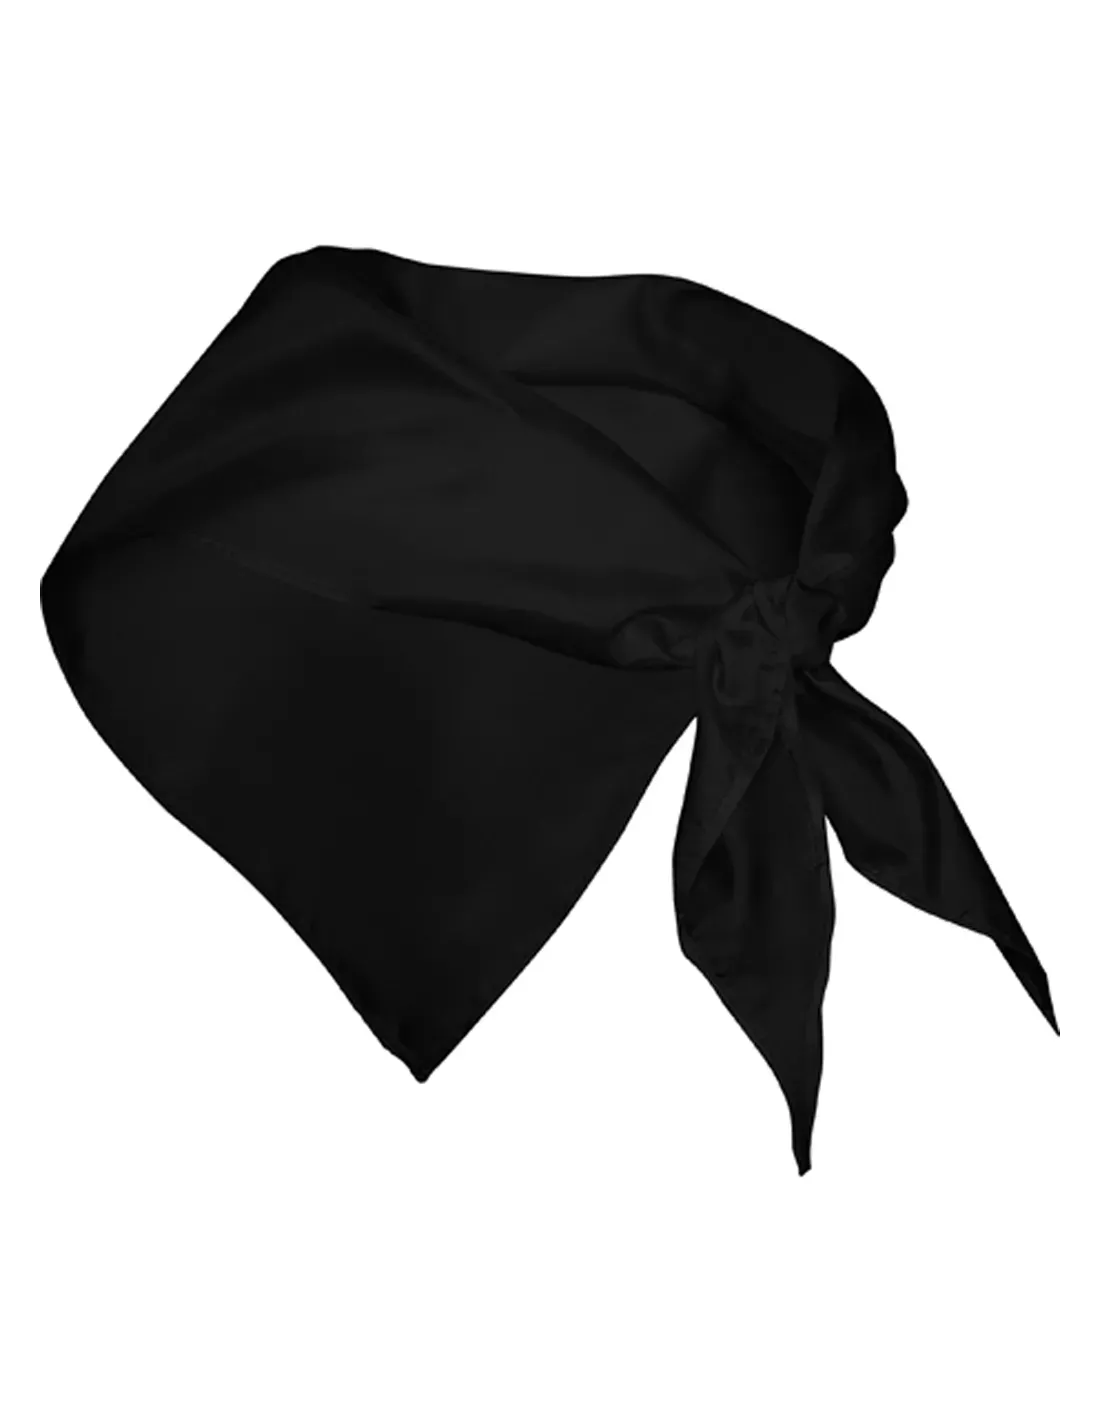 Pañuelo Triangular Personalizado de color negro para bodas y casamientos